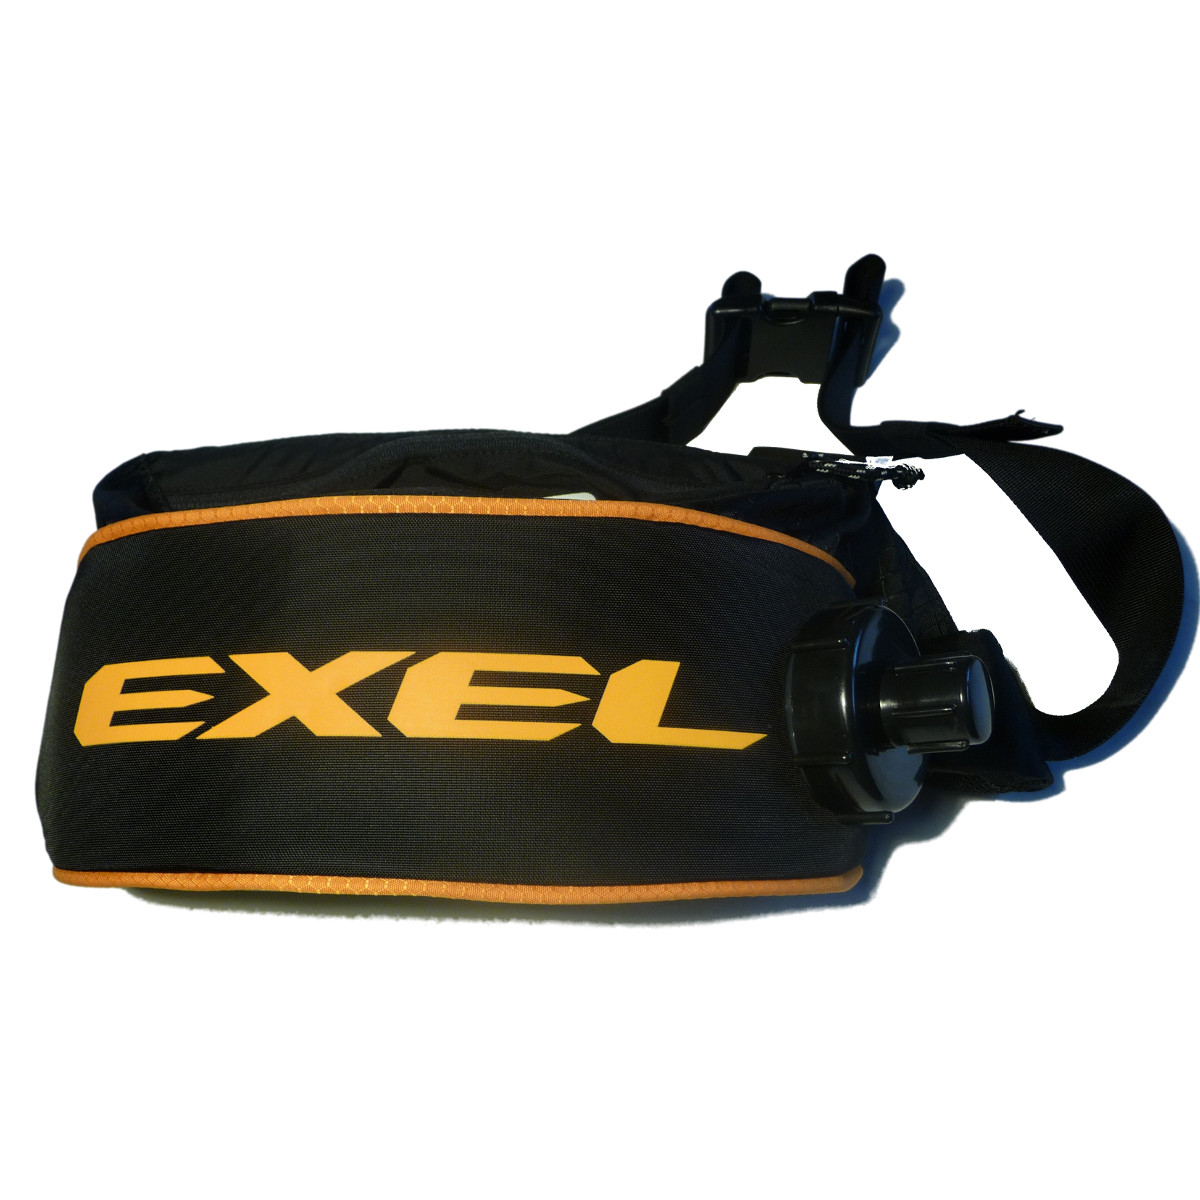 EXEL Bottle Bag, zateplená ledvinka / bidon na běžky 2017/18